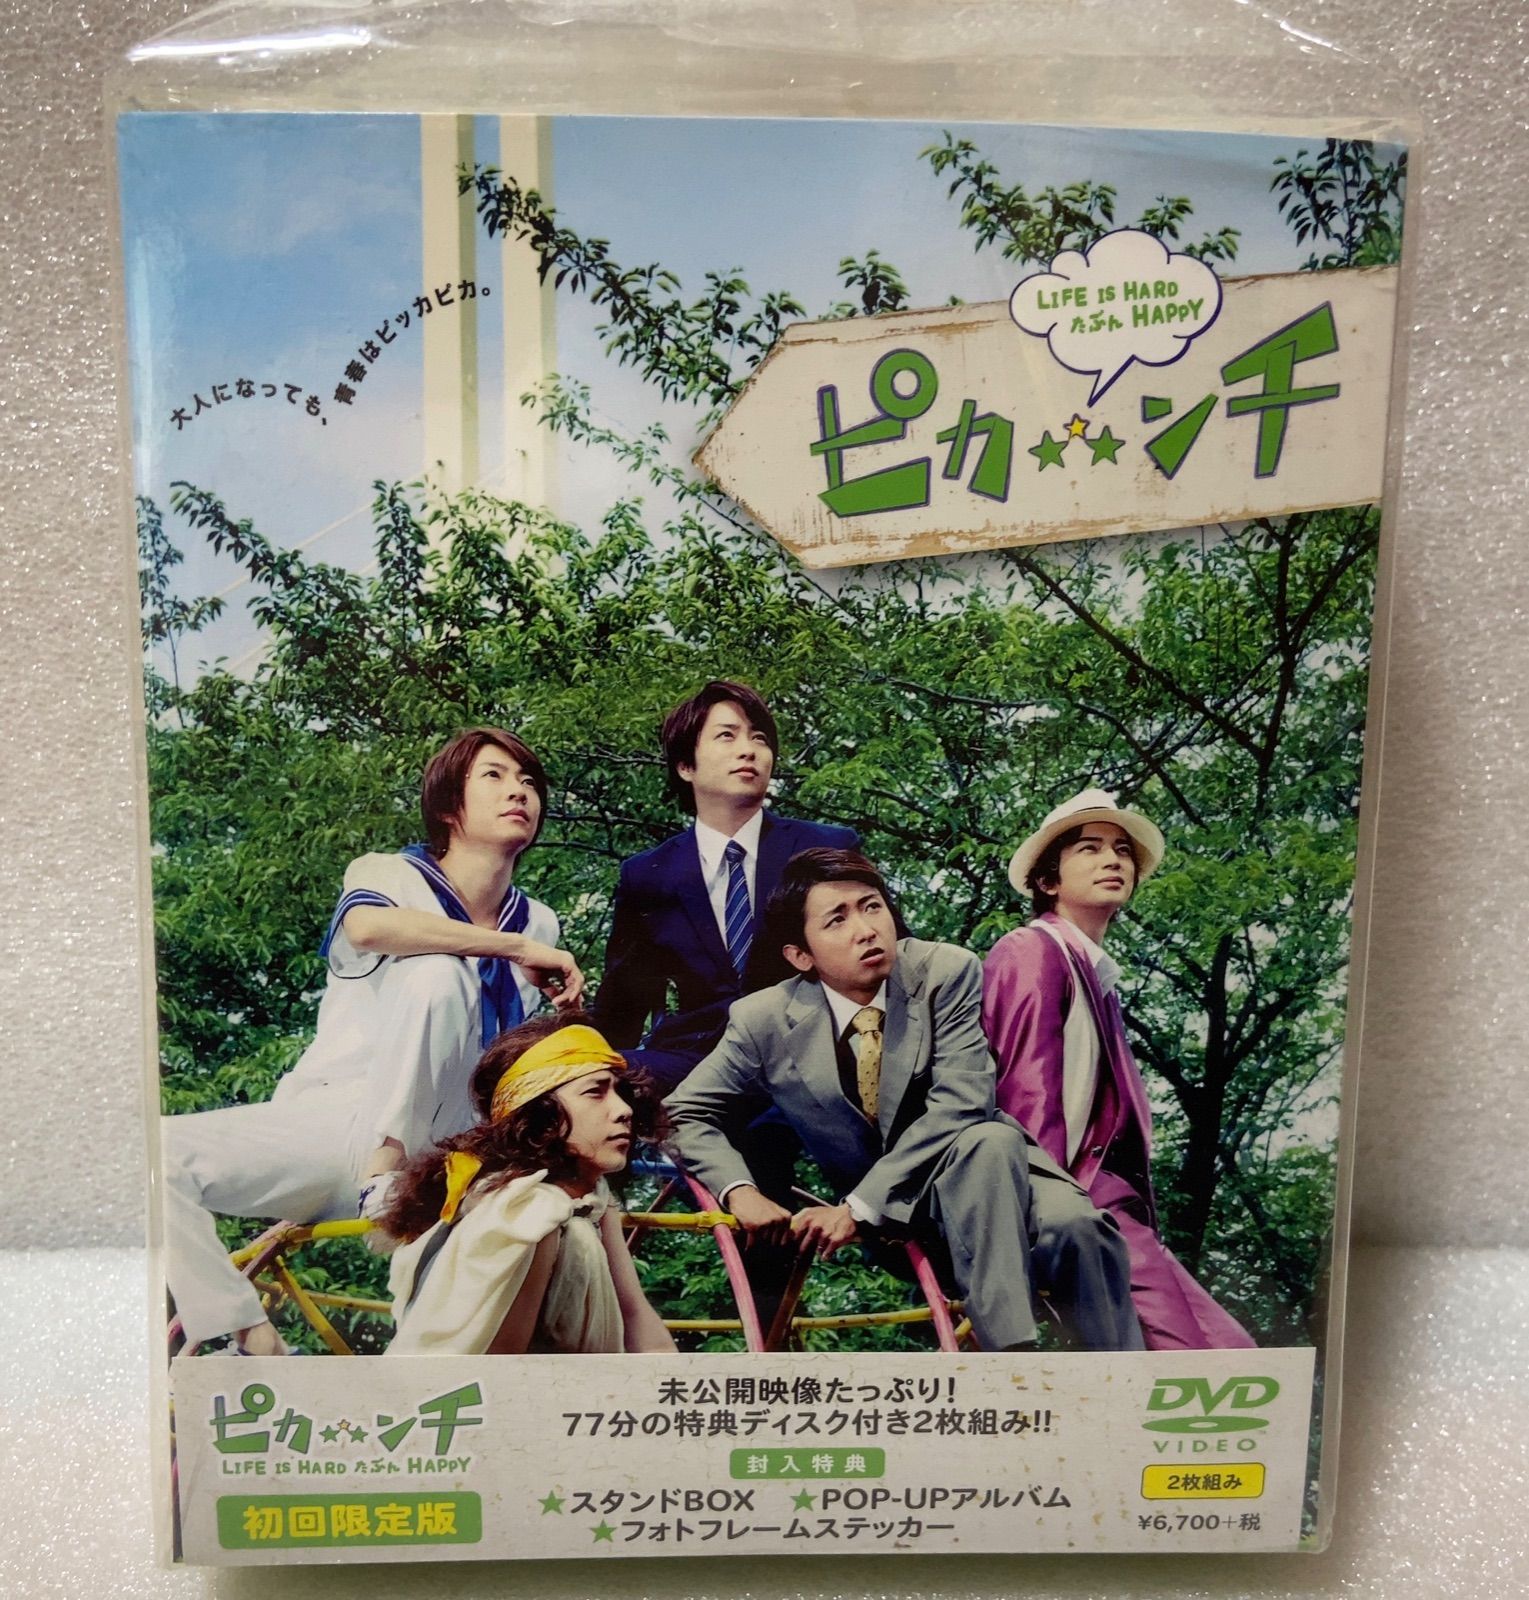 嵐公式 ピカンチ Lifeishard たぶん Happy DVD BOX - 邦画・日本映画